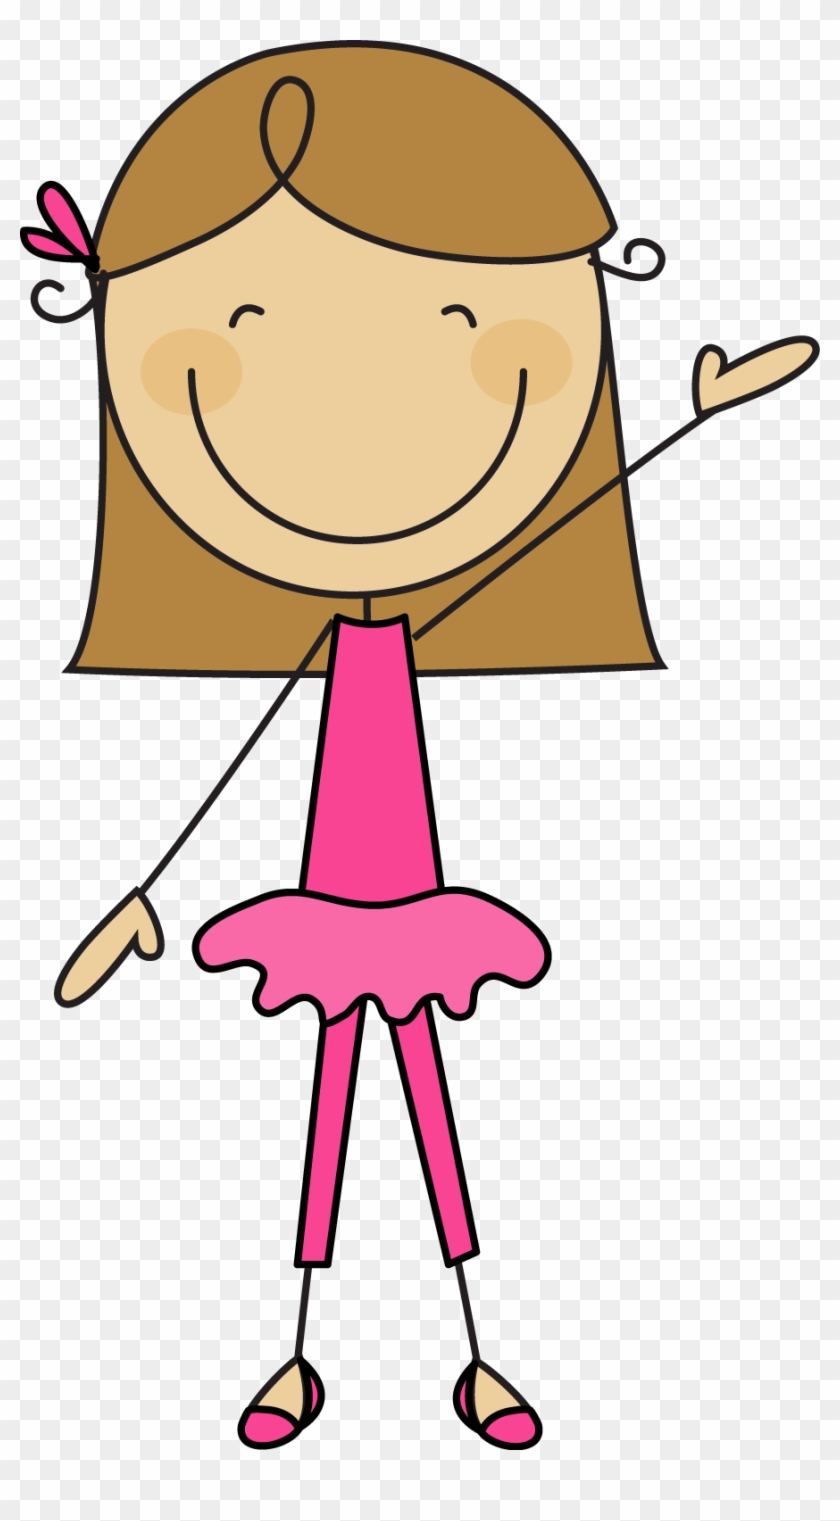 Girl - Cartoon Stick Figure Girl Clipart #120972